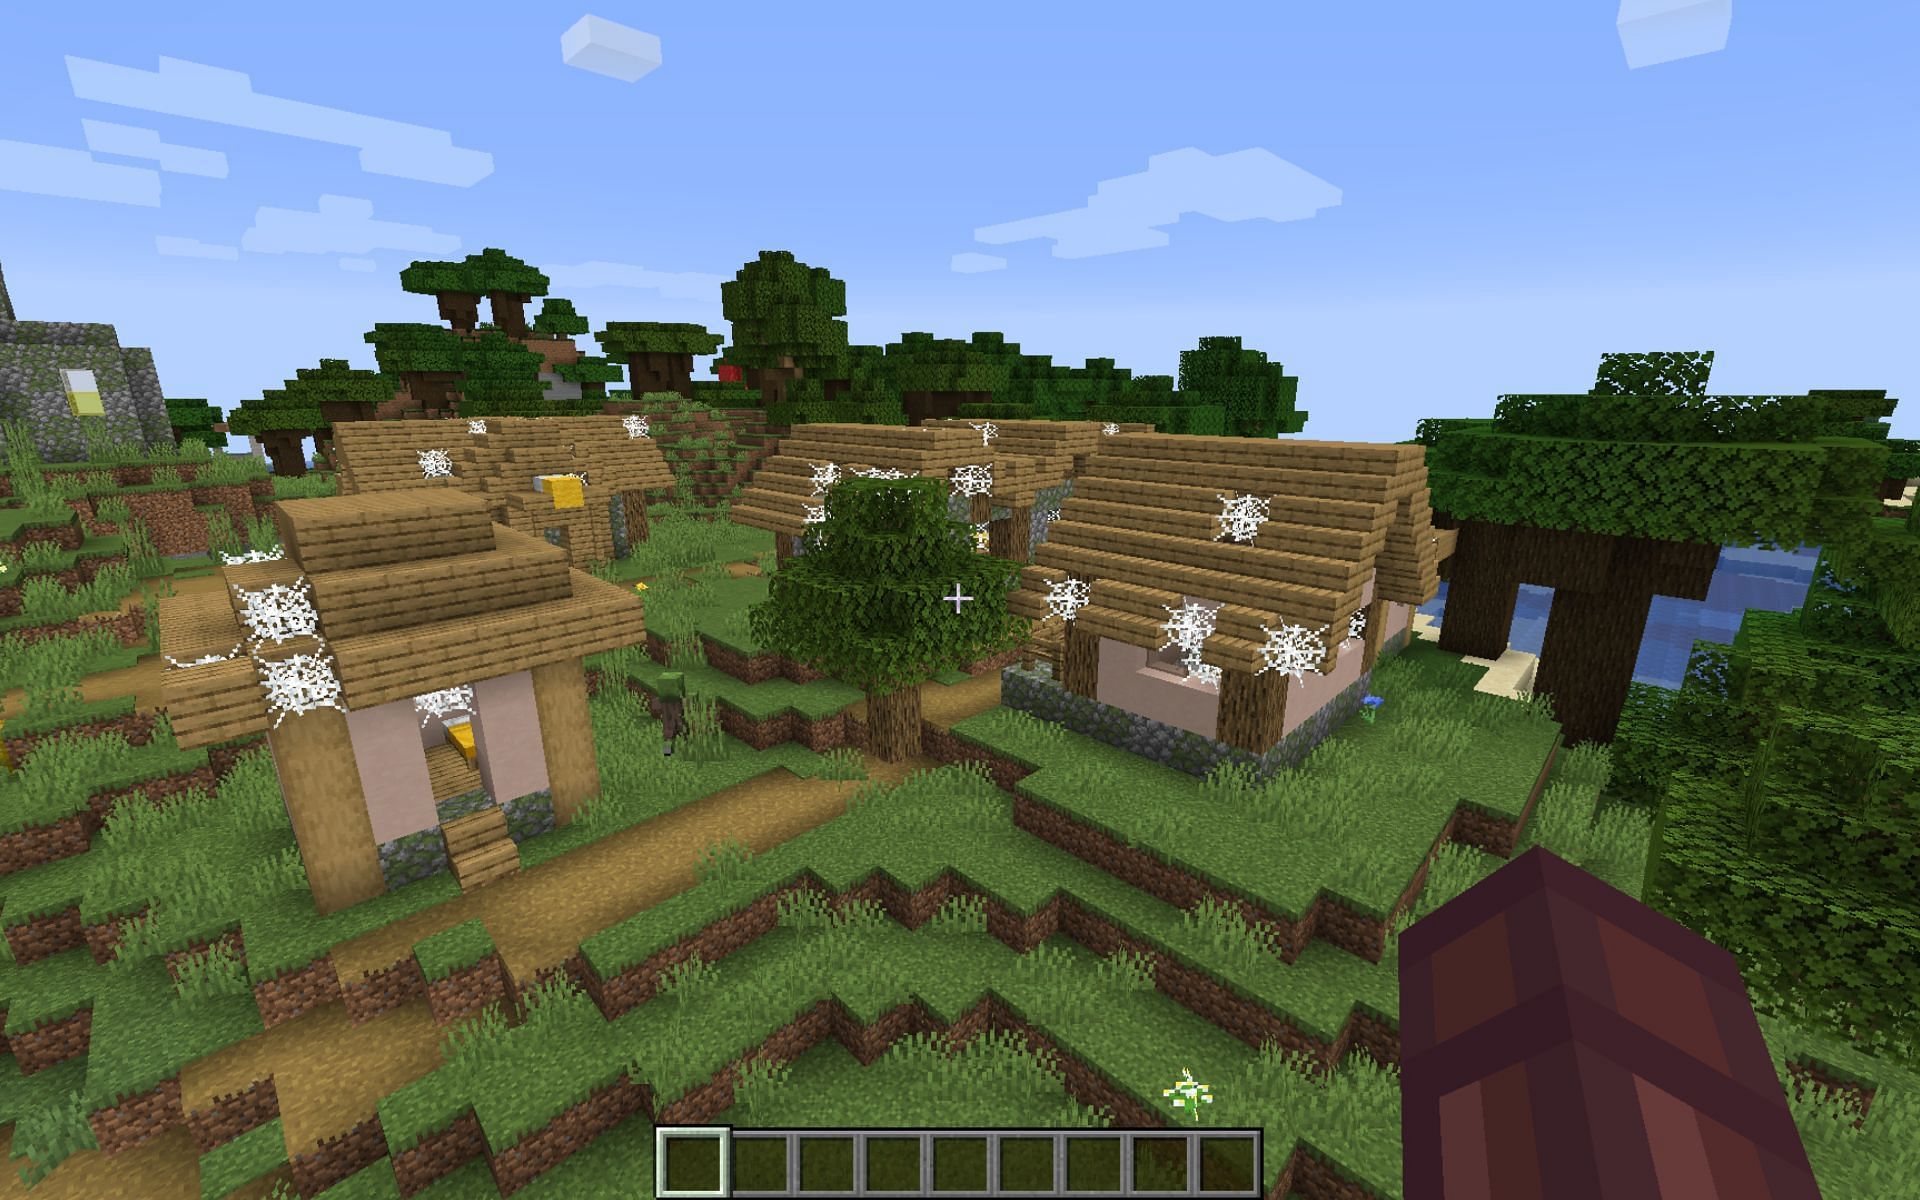 A zombie village in Minecraft (Image via reddit/u/Imagine_Wagonsss)